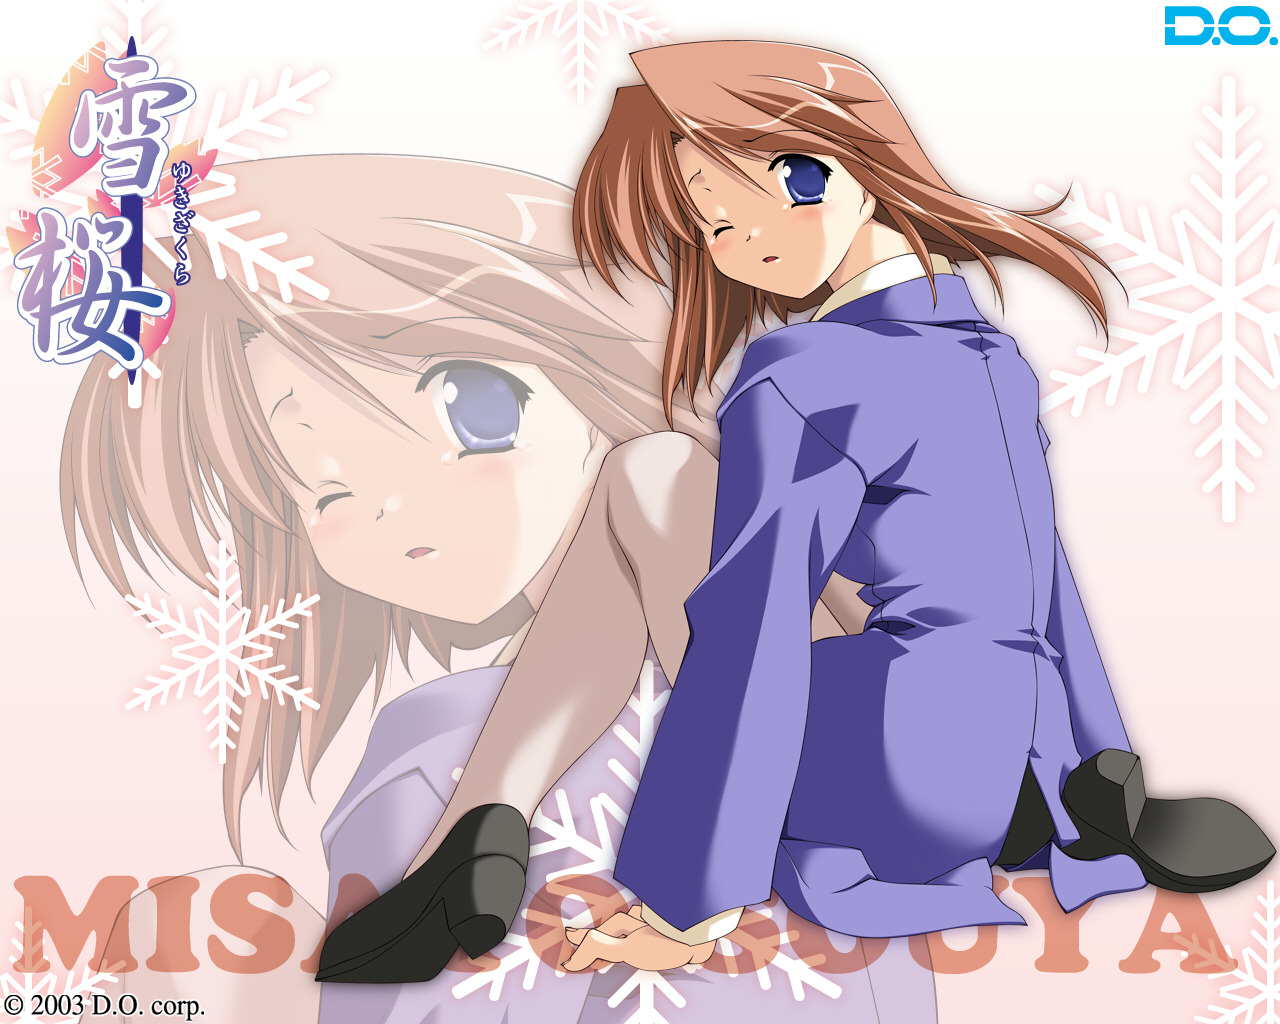 Download High quality Yuki Sakura wallpaper / Anime / 1280x1024